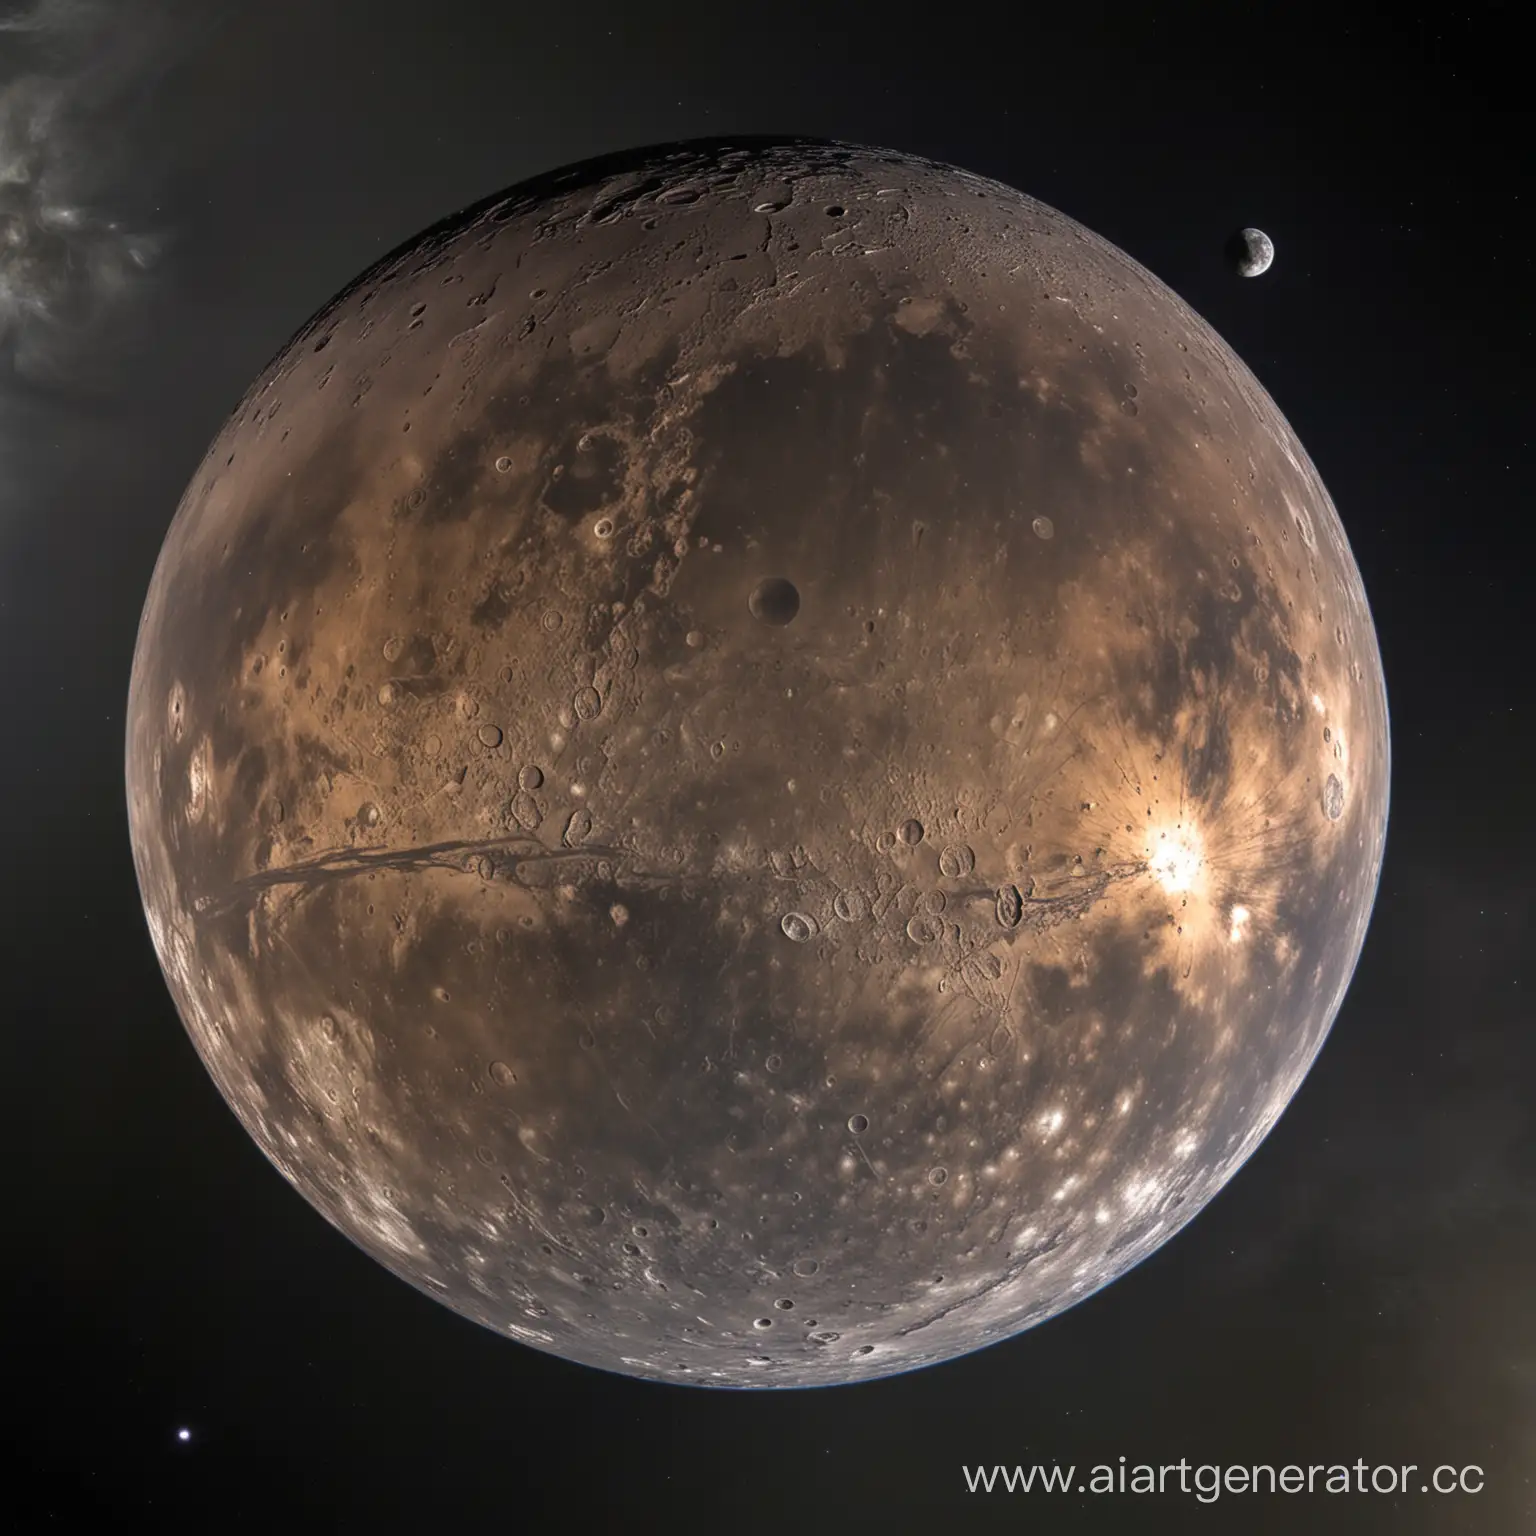 Mercurys-Diverse-Terrain-Craters-and-Plains-under-Extreme-Temperatures